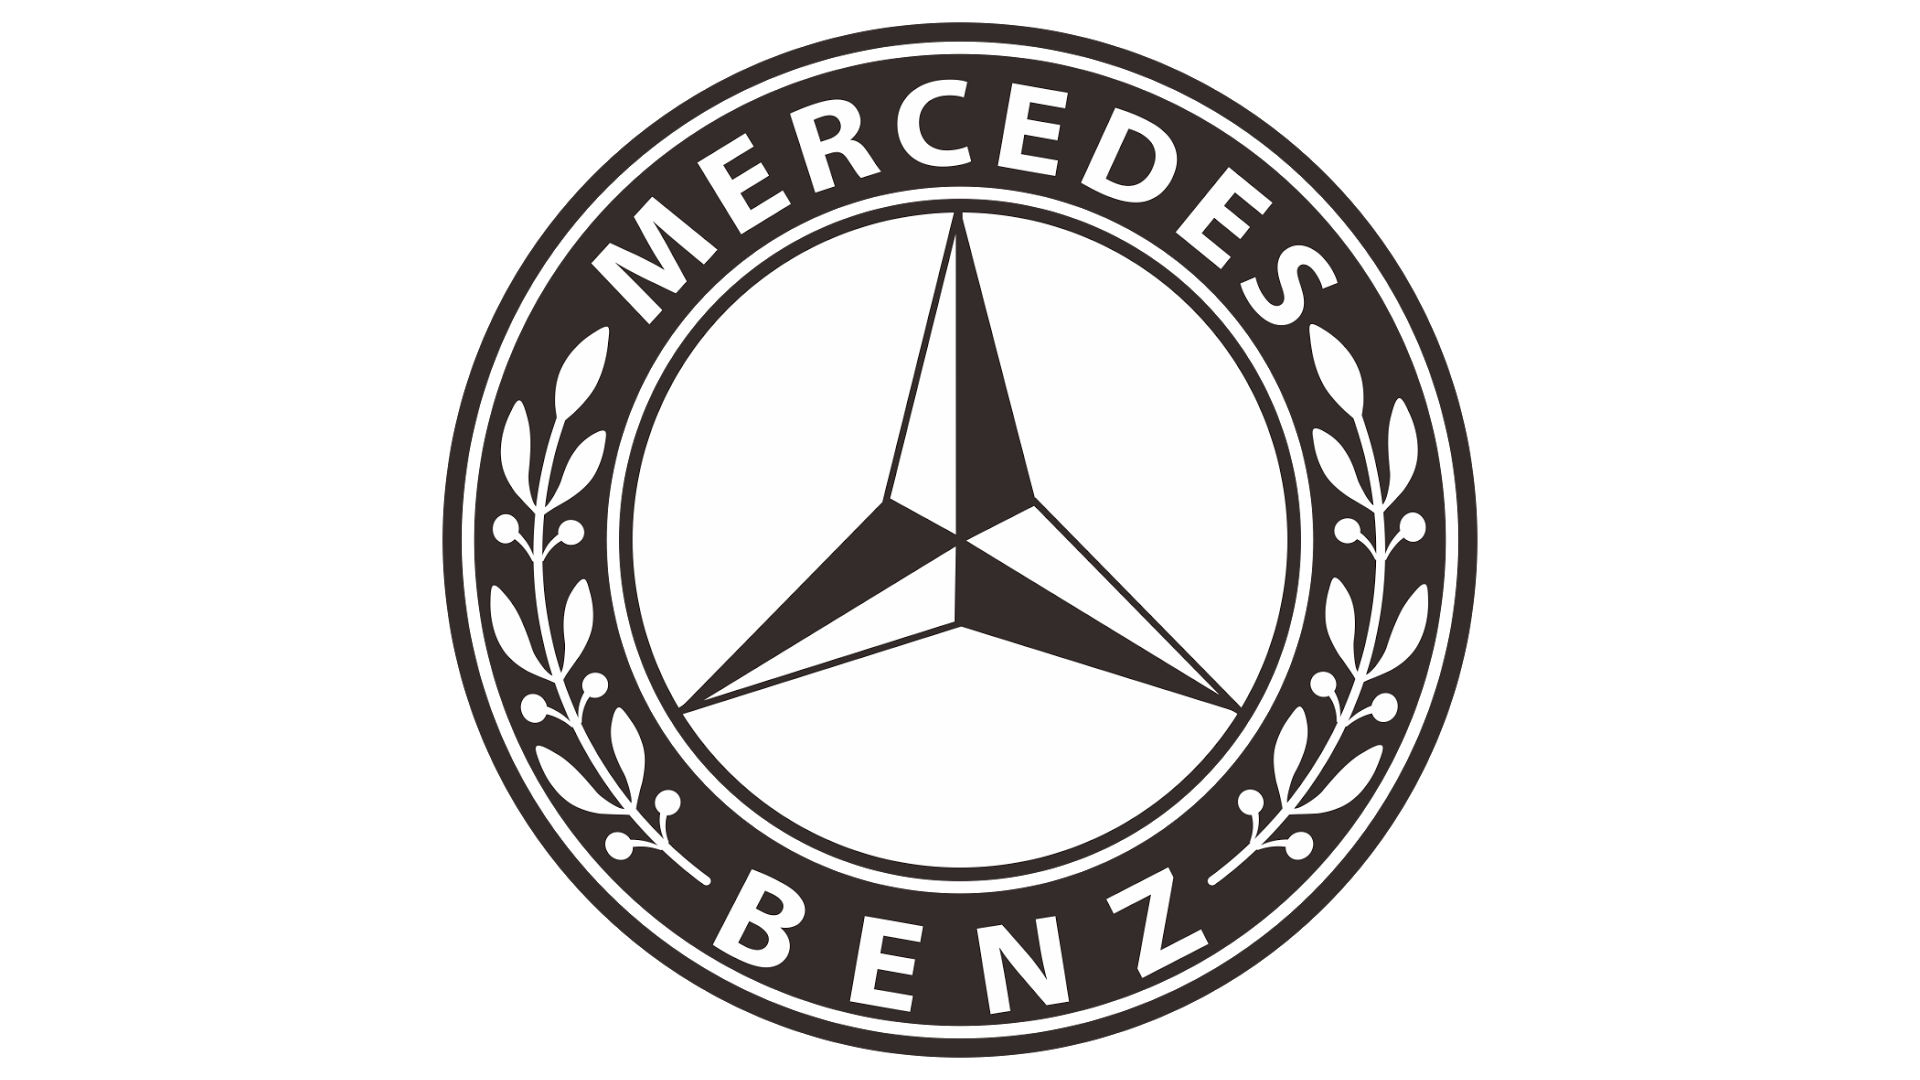 Mercedes-Benz-emblem-1926-1920x1080.png